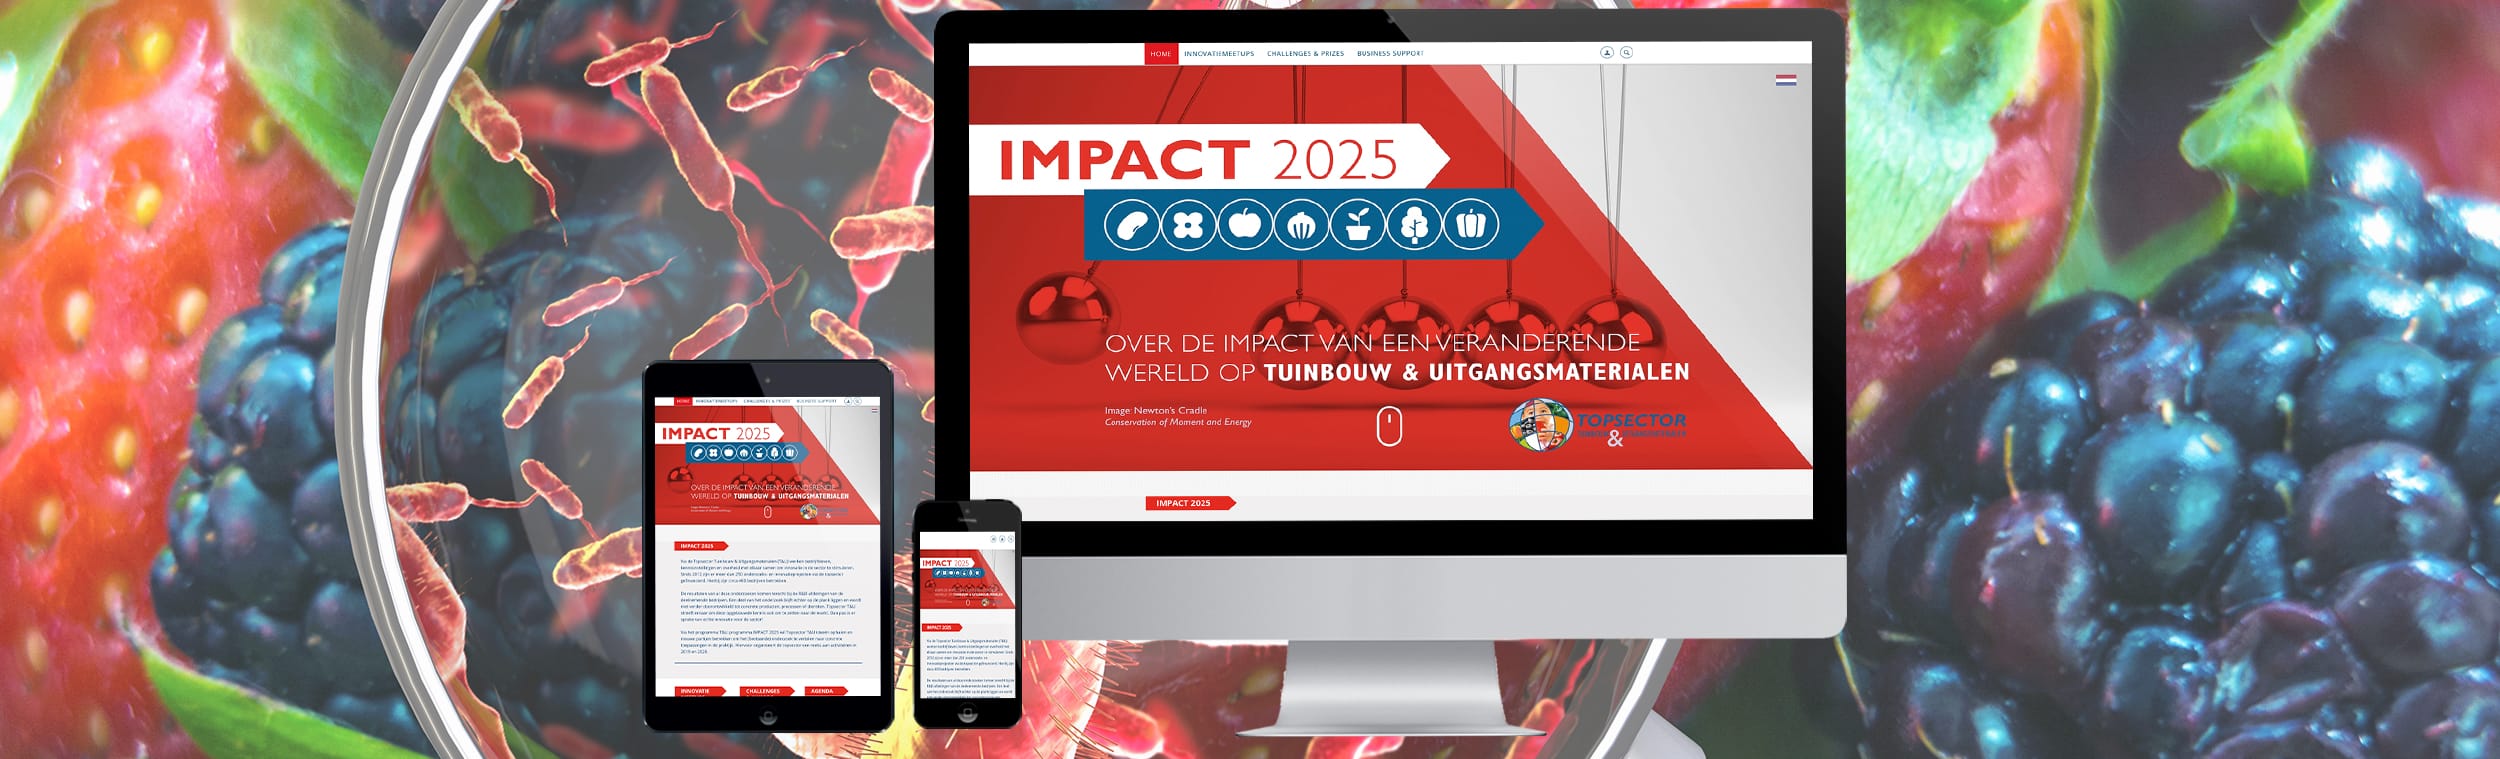 ReMarkAble_Website_Nieuwe_Portfolio_Website_Impact2025